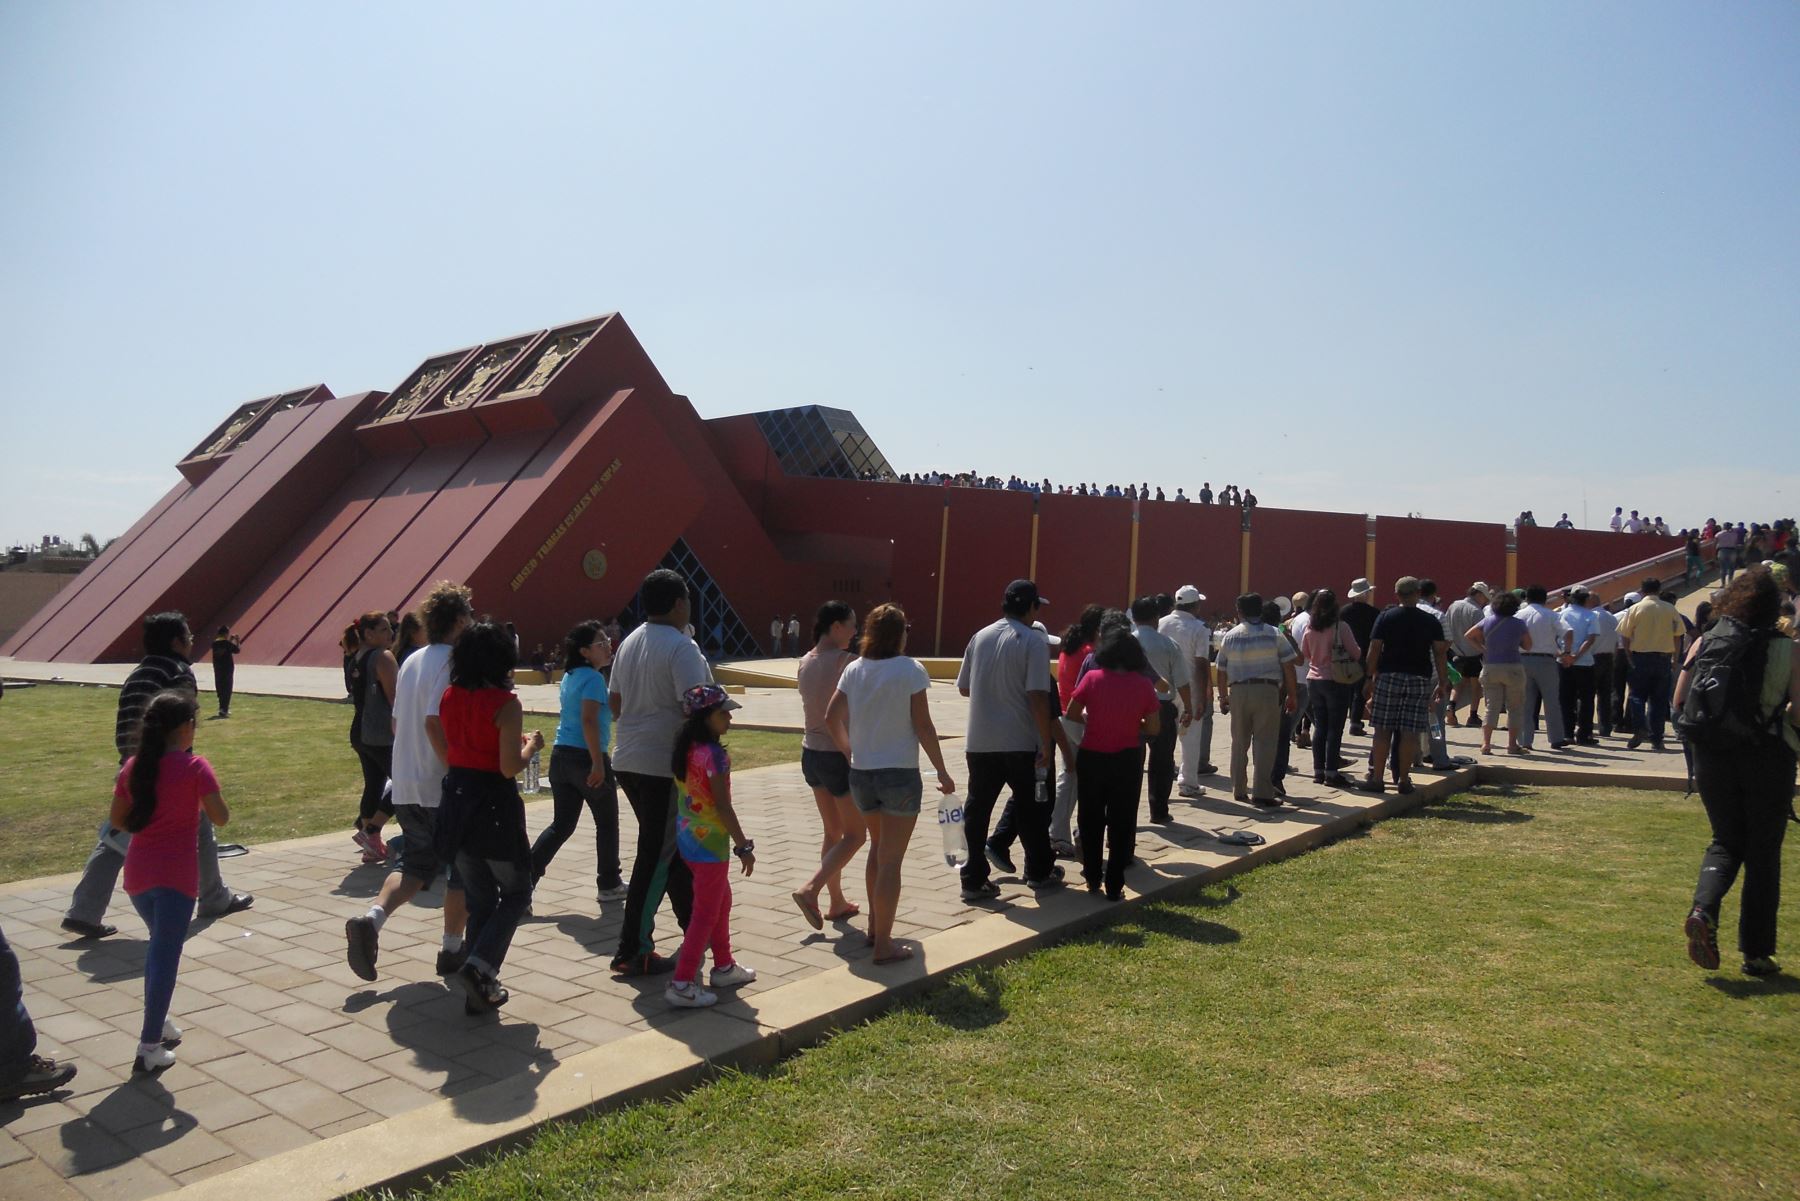 El Museo Tumbas Reales de Sipán (Lambayeque) registró 2,378 visitas durante el domingo 2 de junio, día en que se efectuó una nueva edición de Museos Abiertos.